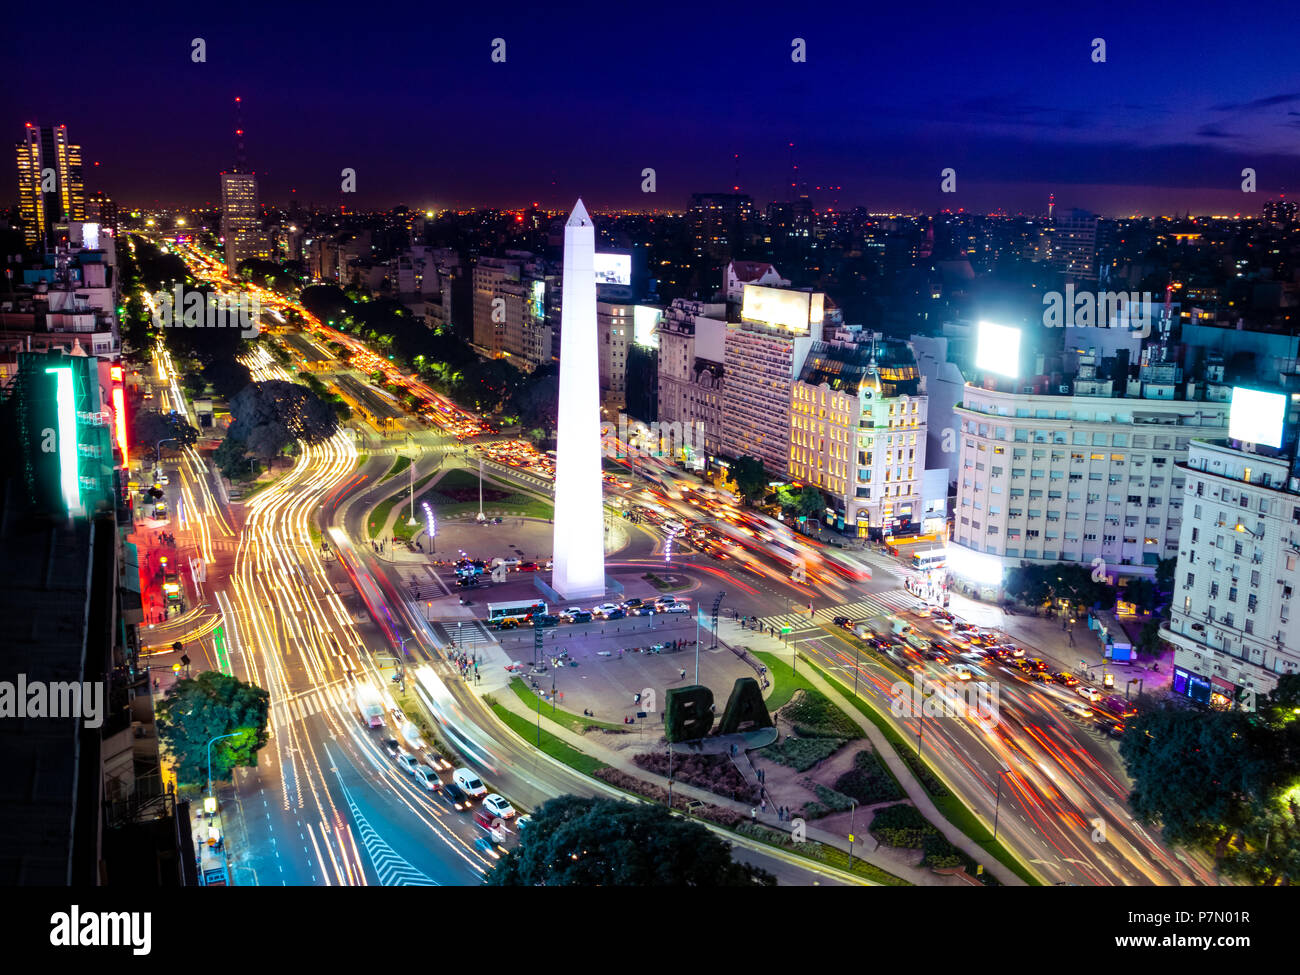 Vue aérienne coloré de Buenos Aires et l'avenue 9 de julio, la nuit - Buenos Aires, Argentine Banque D'Images